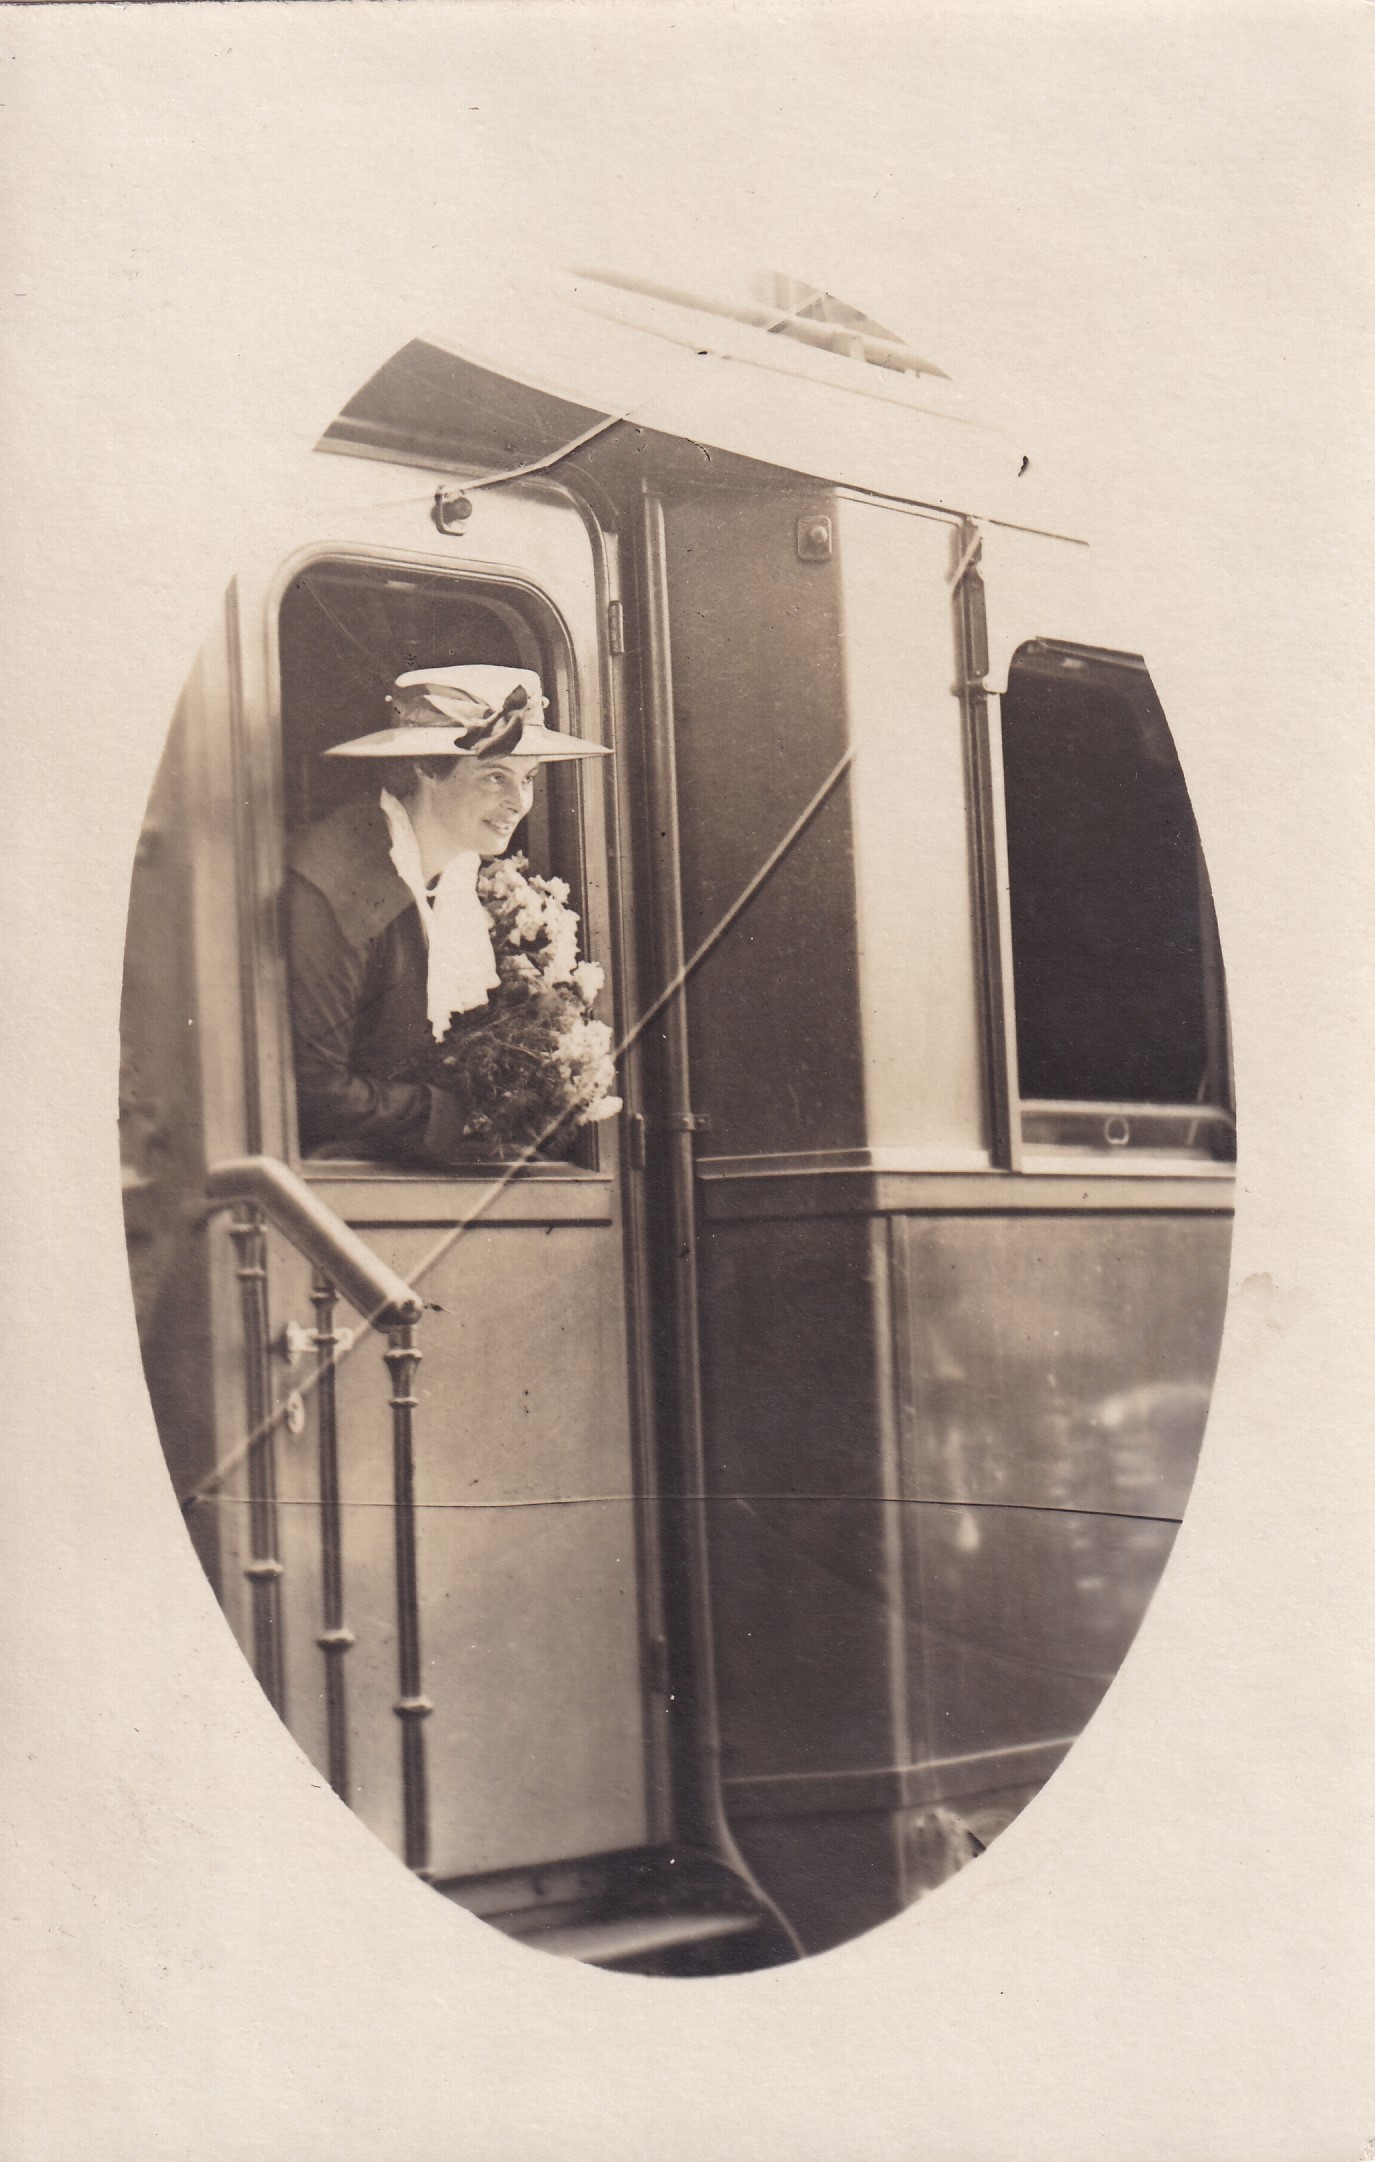 Bildpostkarte mit Foto der Kronprinzessin Cecilie aus einem Zugfenster schauend, 1919 (?) (Schloß Wernigerode GmbH RR-F)